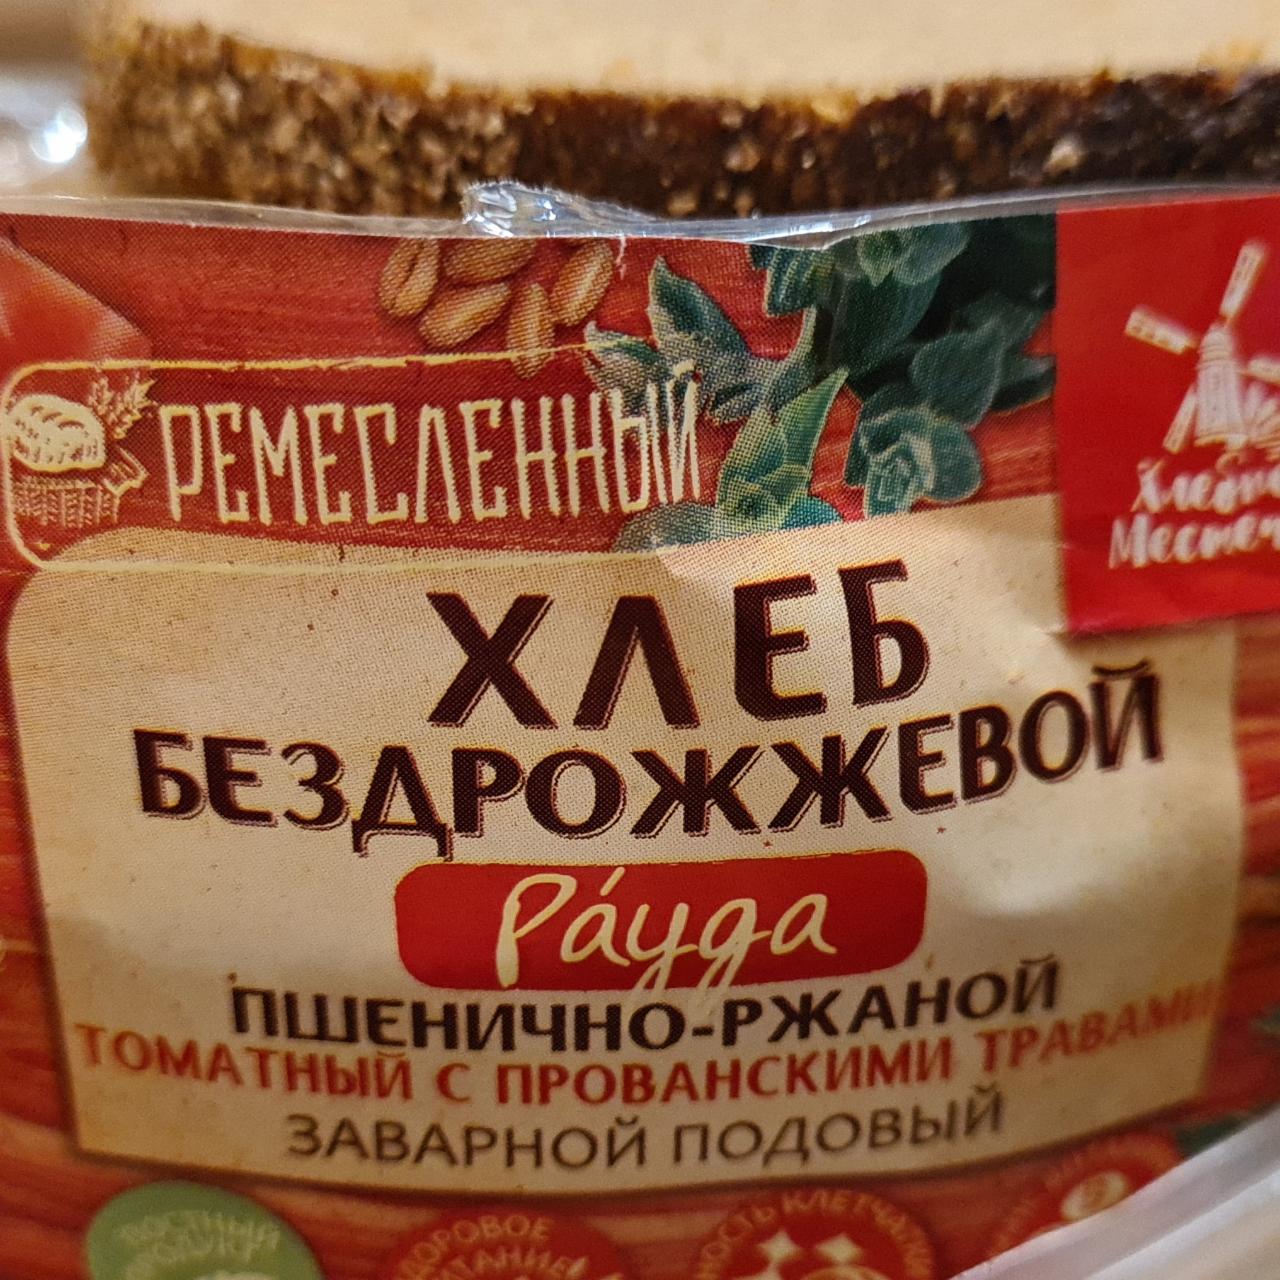 Фото - Хлеб томатный с прованскими травами рауда Хлебное местечко